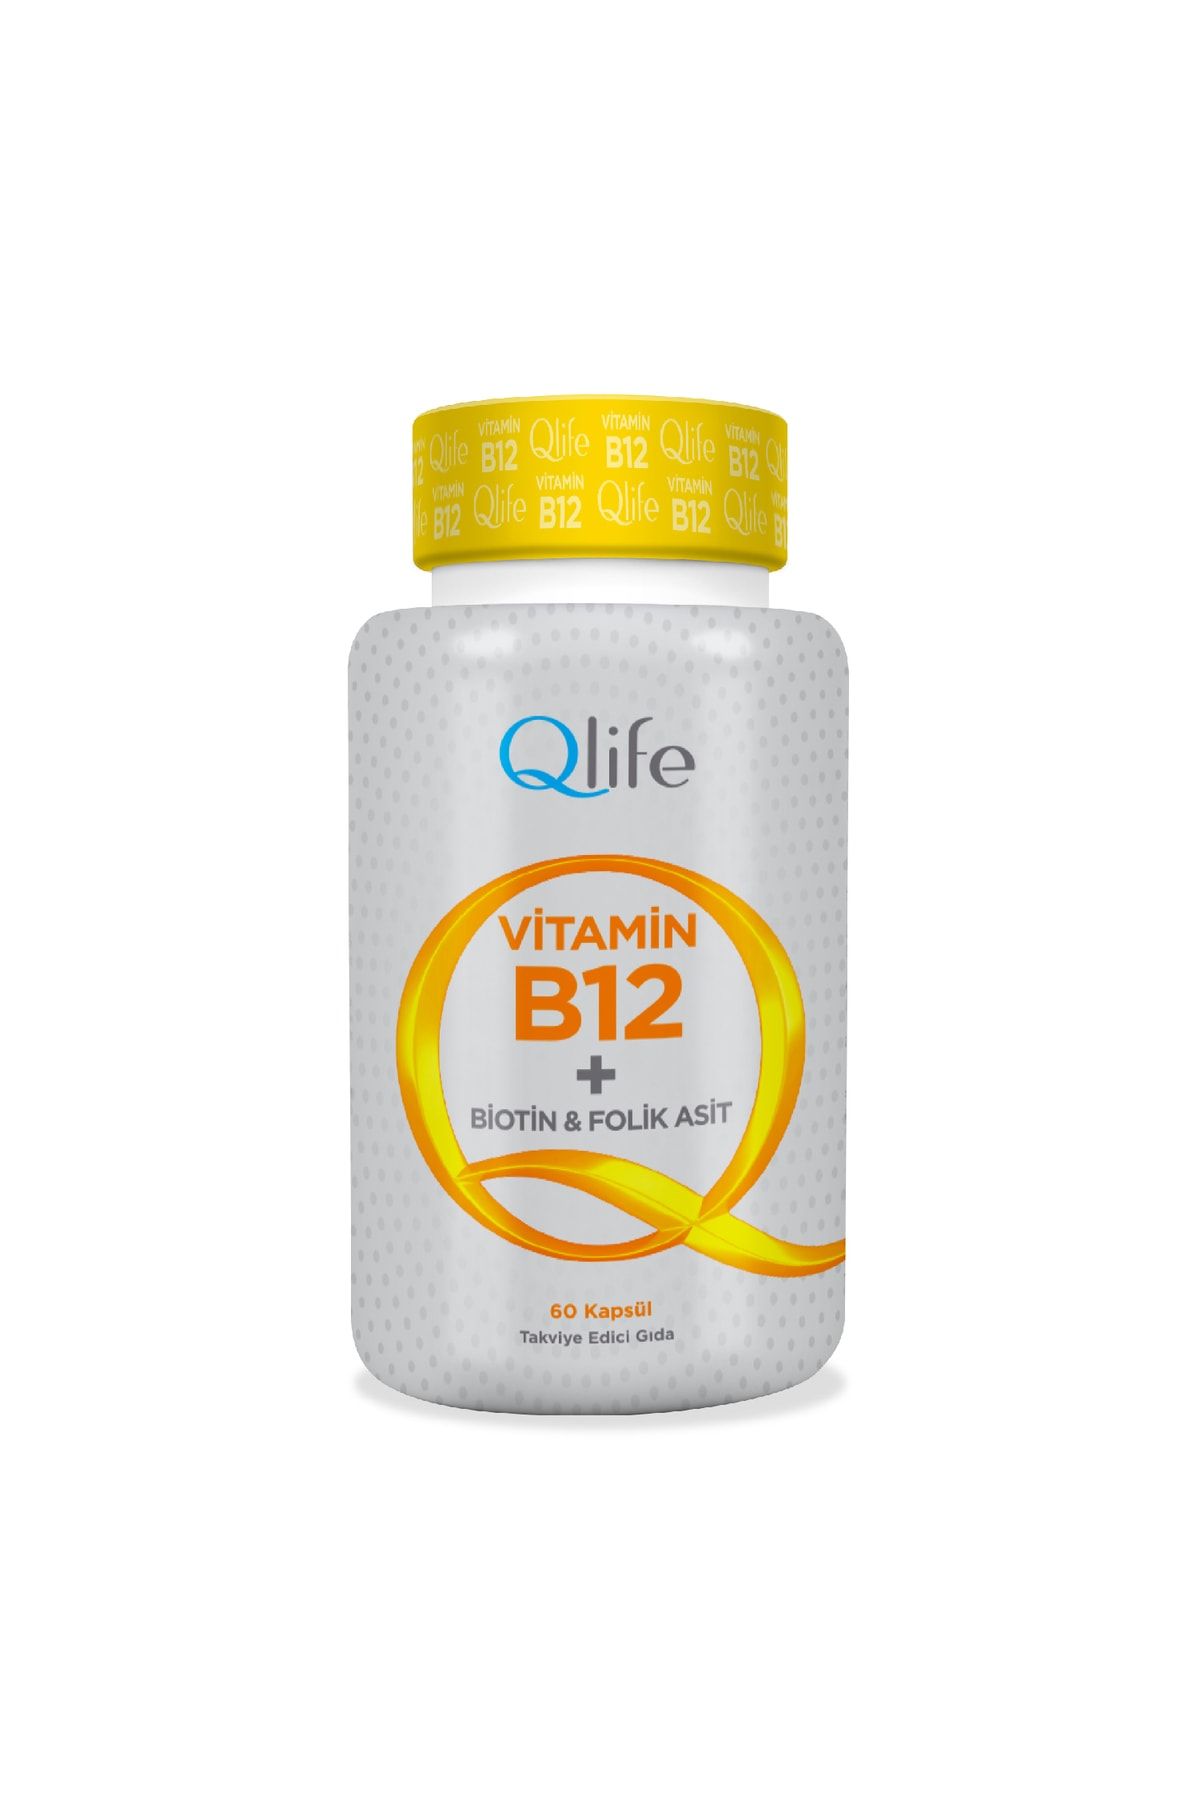 Q LİFE Vitamin B12 + Biotin & Folik Asit 60 Kapsül